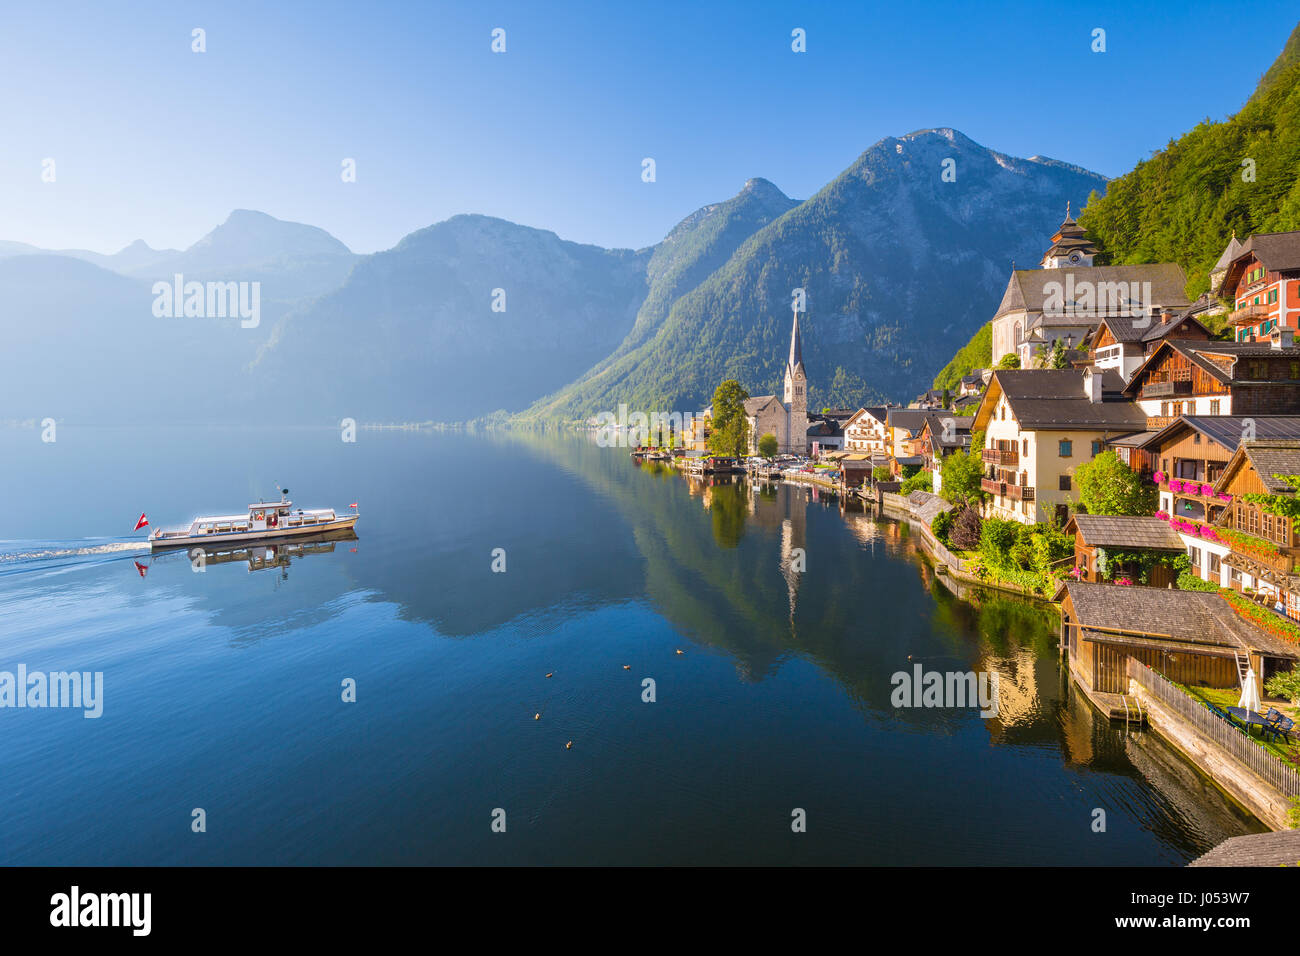 Klassische Postkartenblick auf berühmte Hallstätter See Stadt in den Alpen mit Passagier Schiff im malerischen goldenen Morgenlicht an einem sonnigen Tag im Sommer Stockfoto